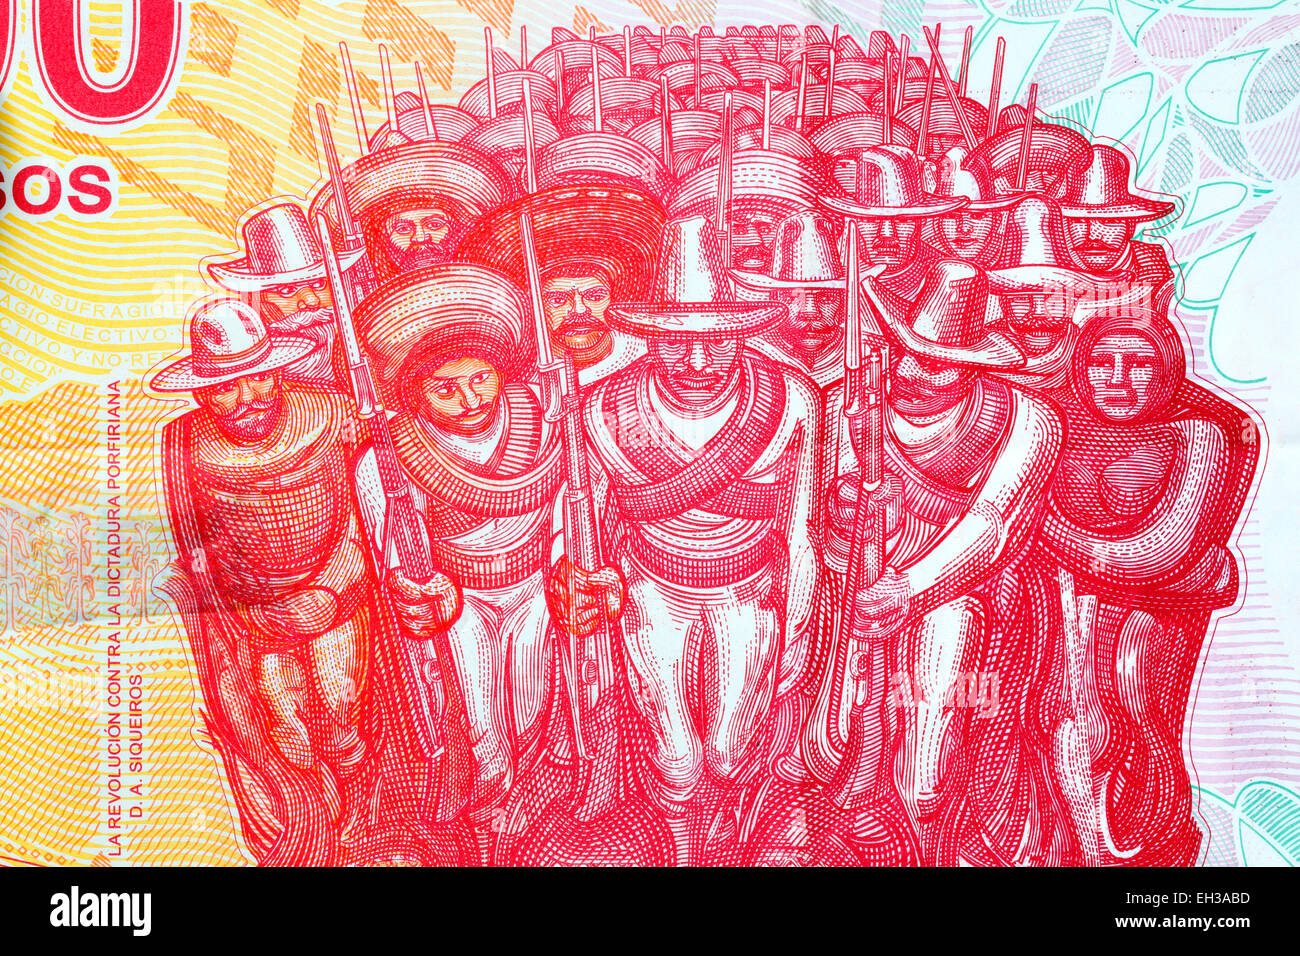 Fragment de la fresque murale peintre mexicain David Alfaro Siqueiros, billets de 100 pesos au Mexique, 2007 Banque D'Images